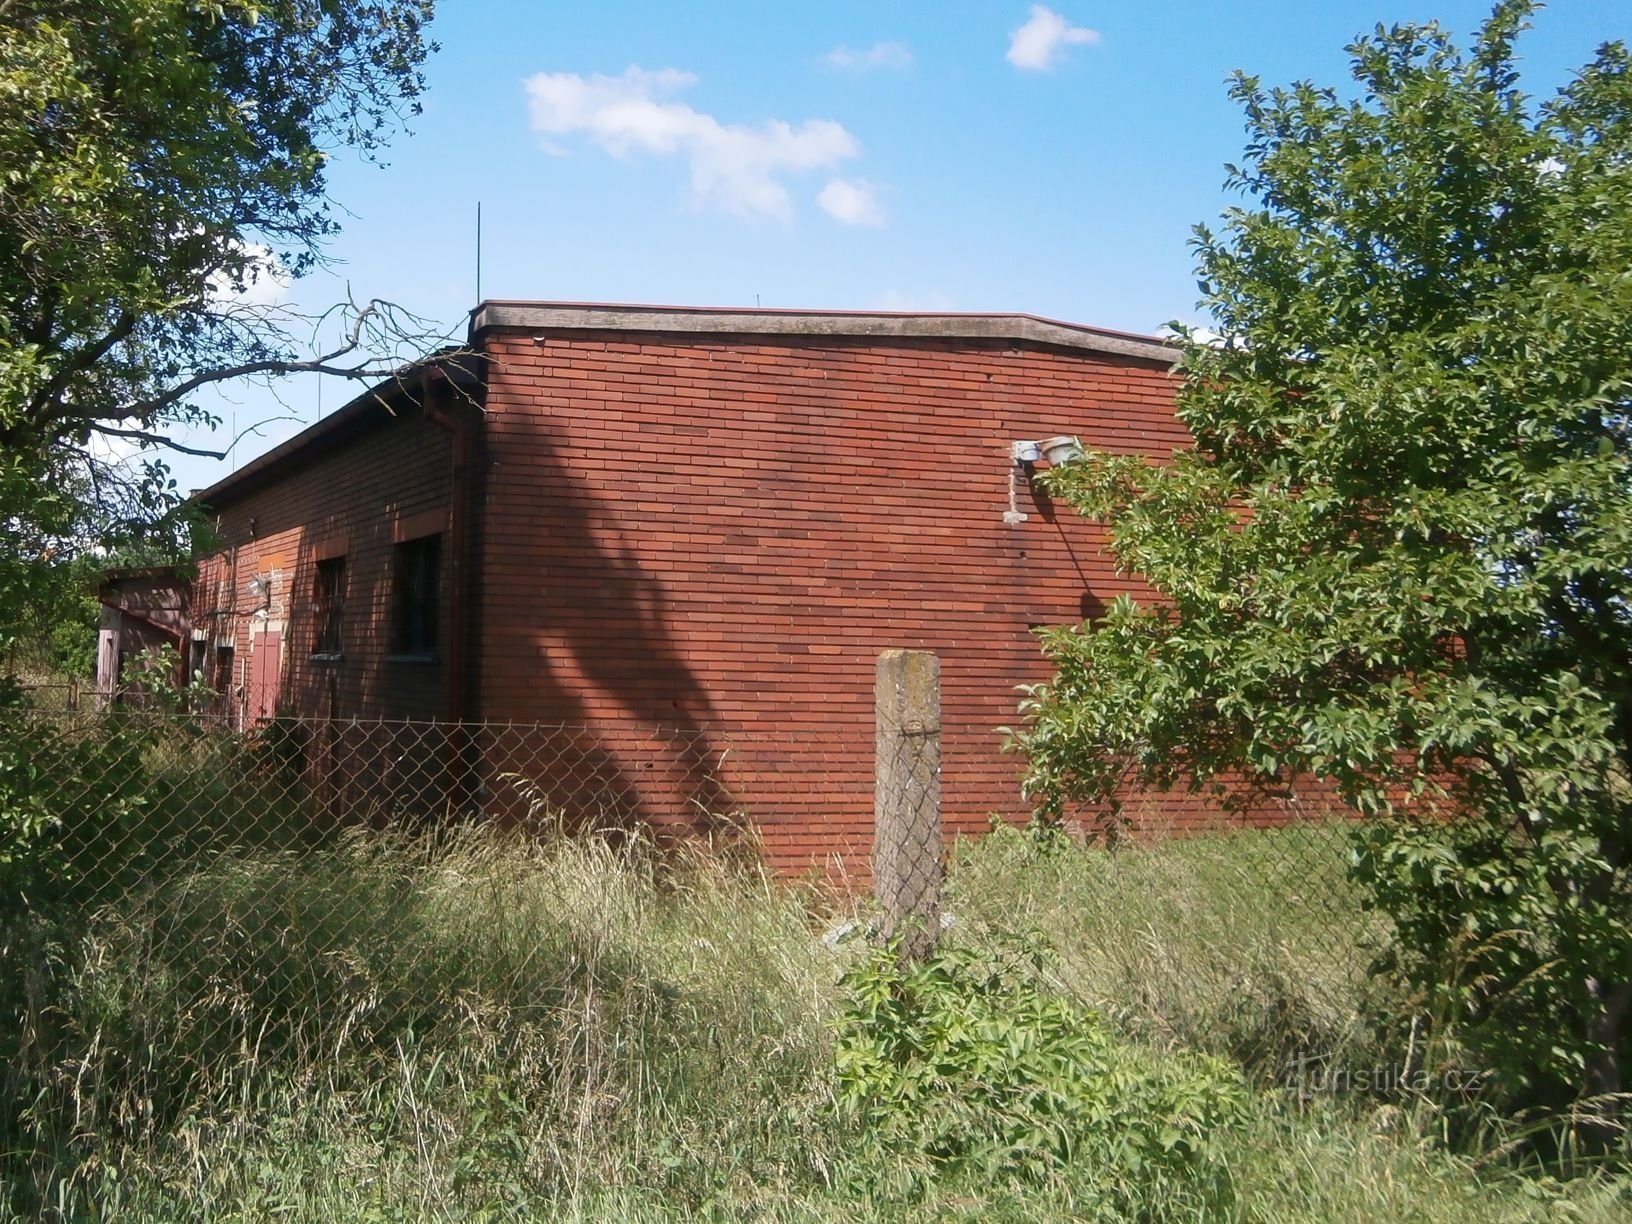 Nhà máy nước cũ ở Plácky u Labe (10.6.2017-XNUMX-XNUMX)